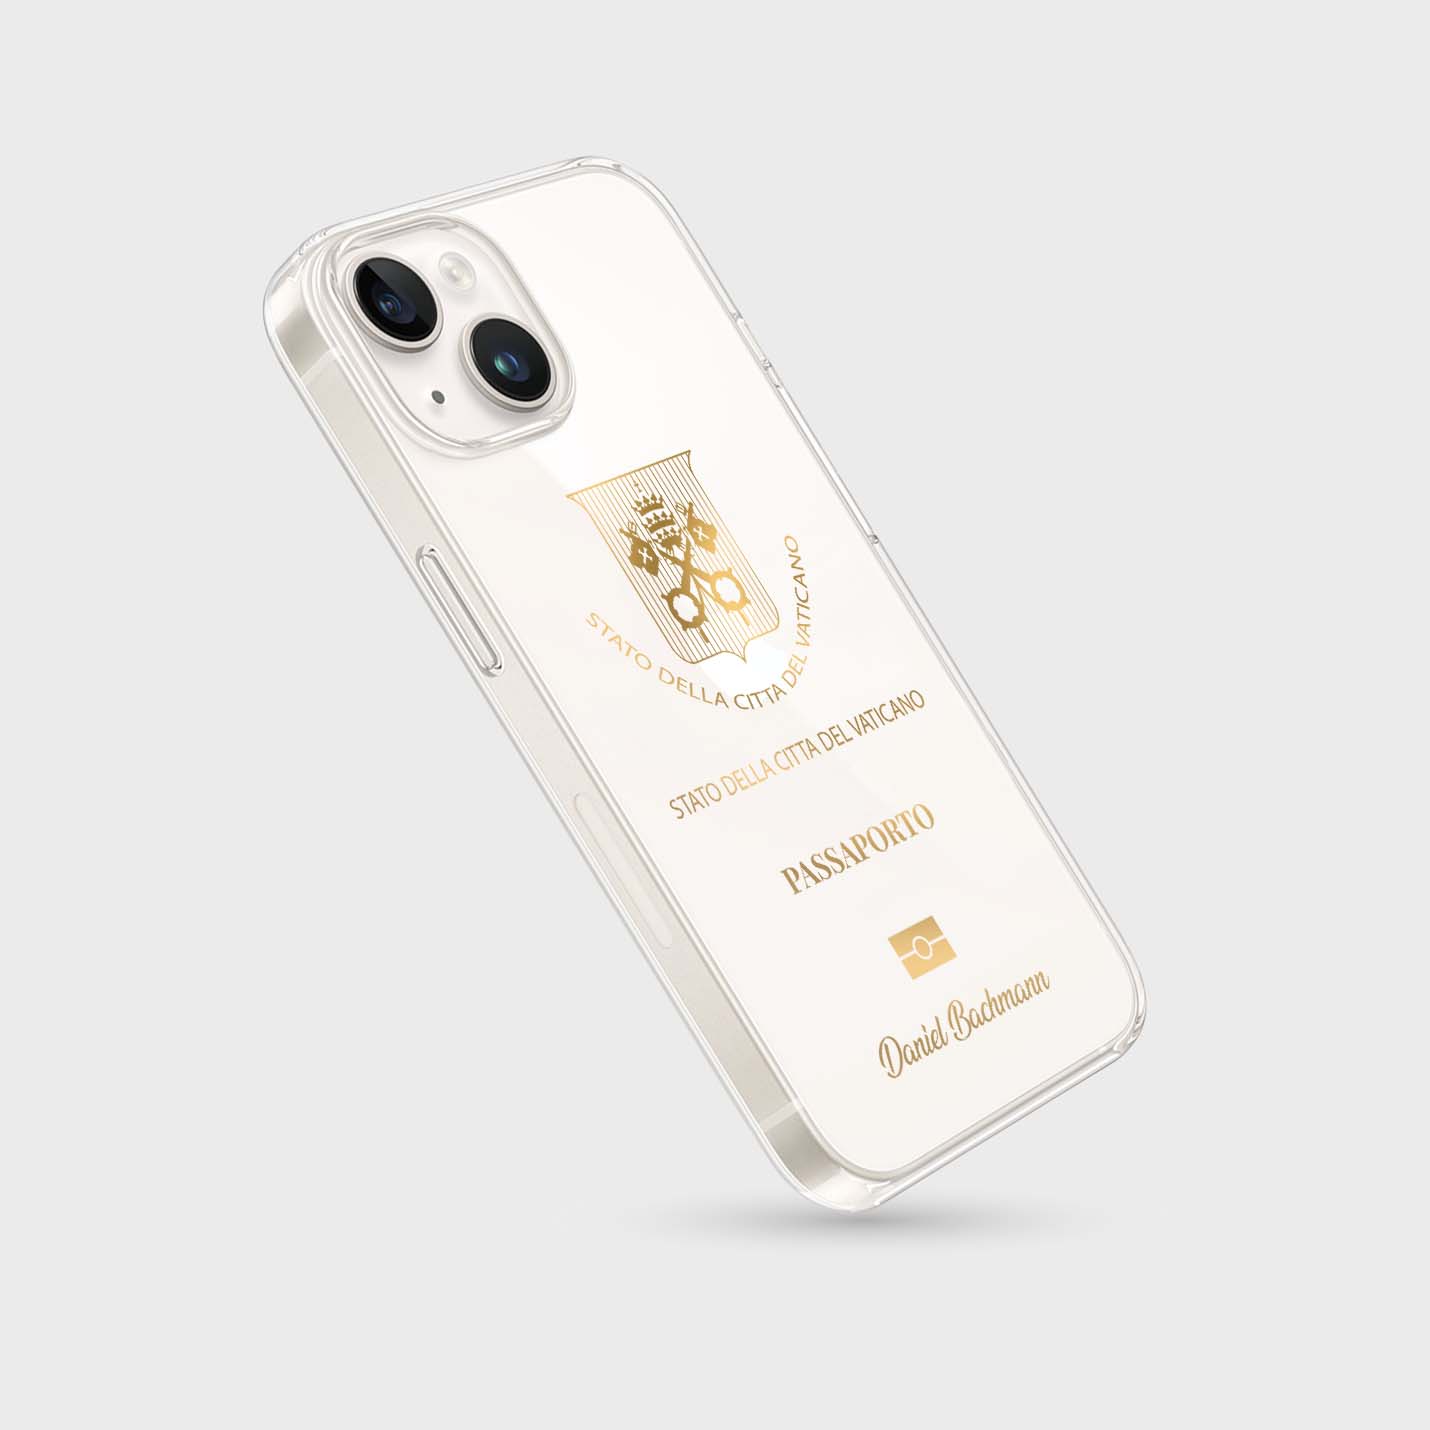 Handyhüllen mit Reisepass - Vatikanstadt - 1instaphone